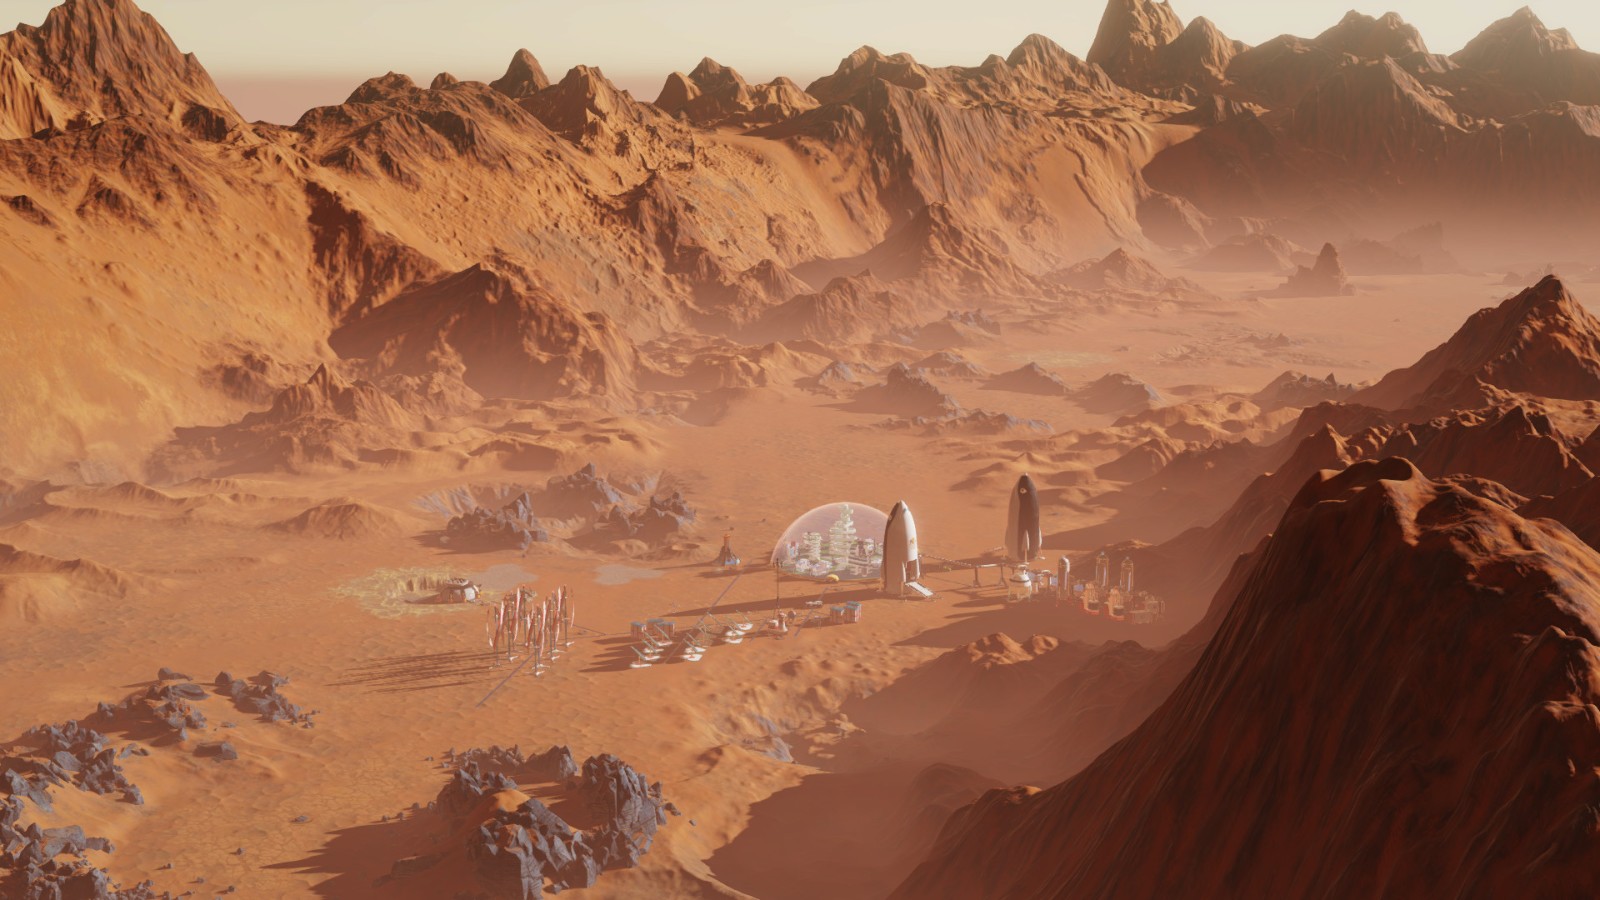 殖民模拟游戏《火星求生》Steam新史低 22元